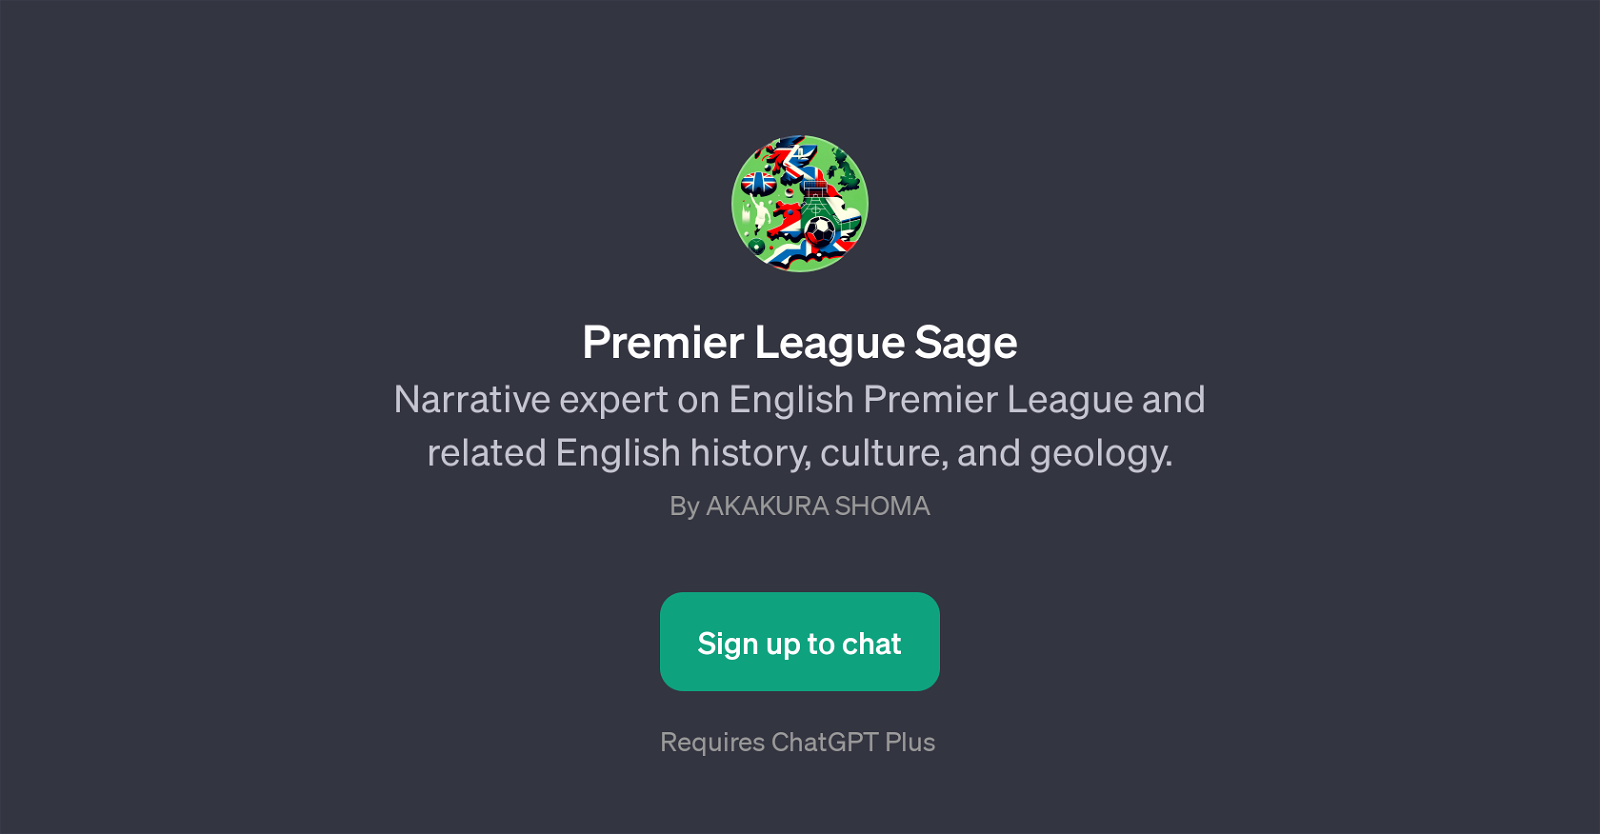 Premier League Sage website